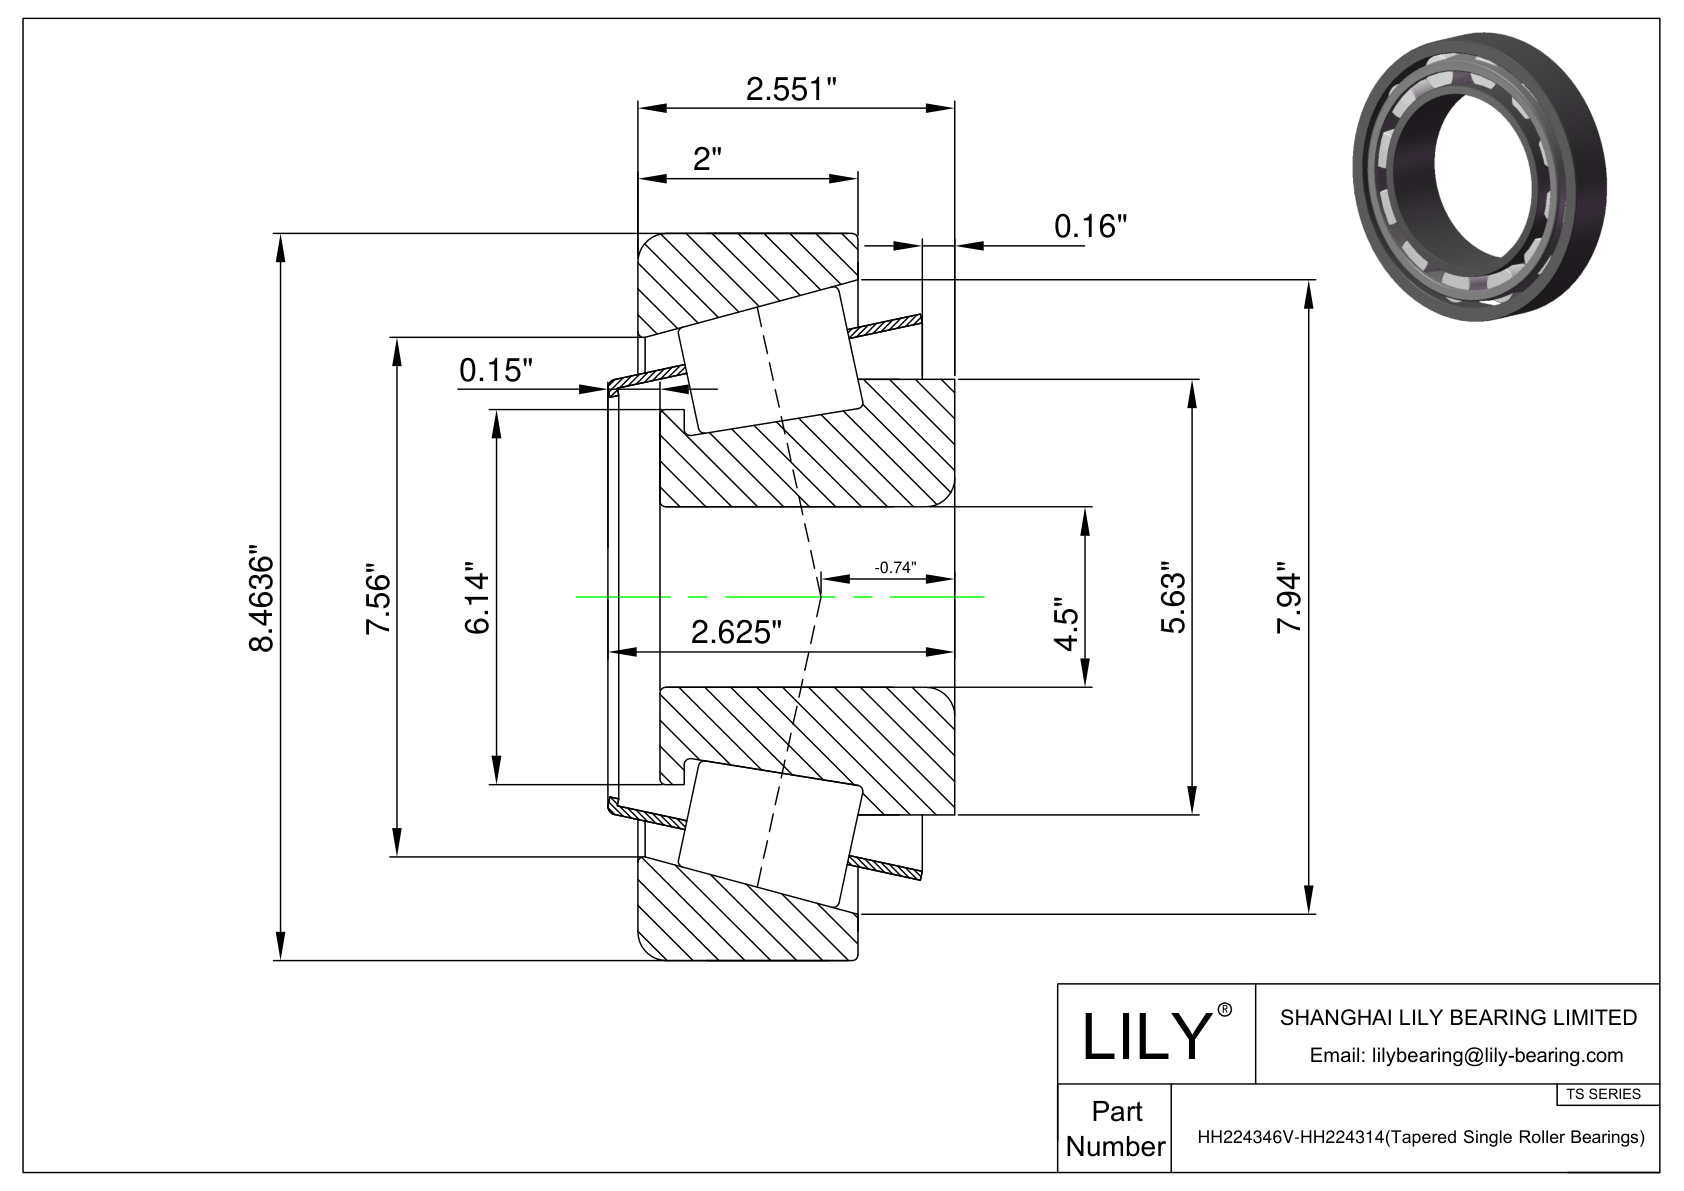 HH224346V-HH224314 TS系列(圆锥单滚子轴承)(英制) CAD图形